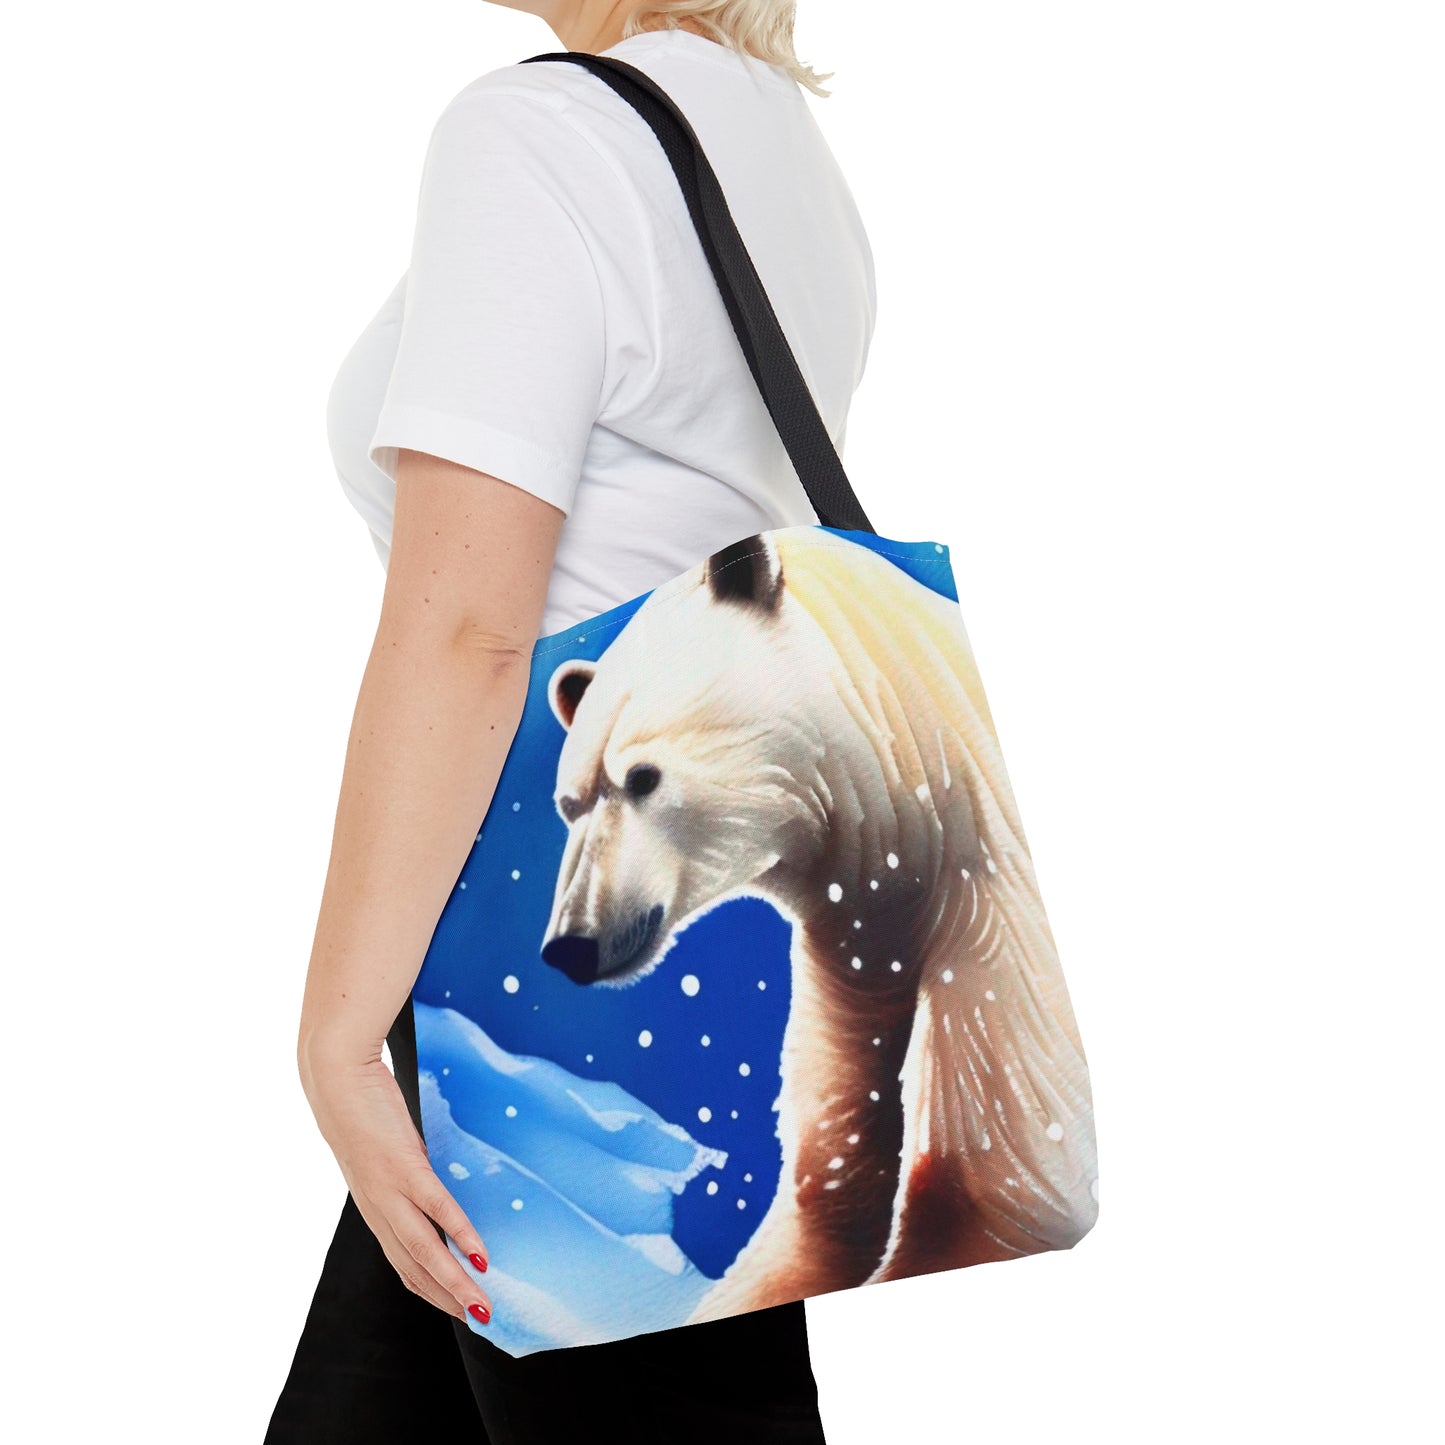 Polar Bear Tote Bag